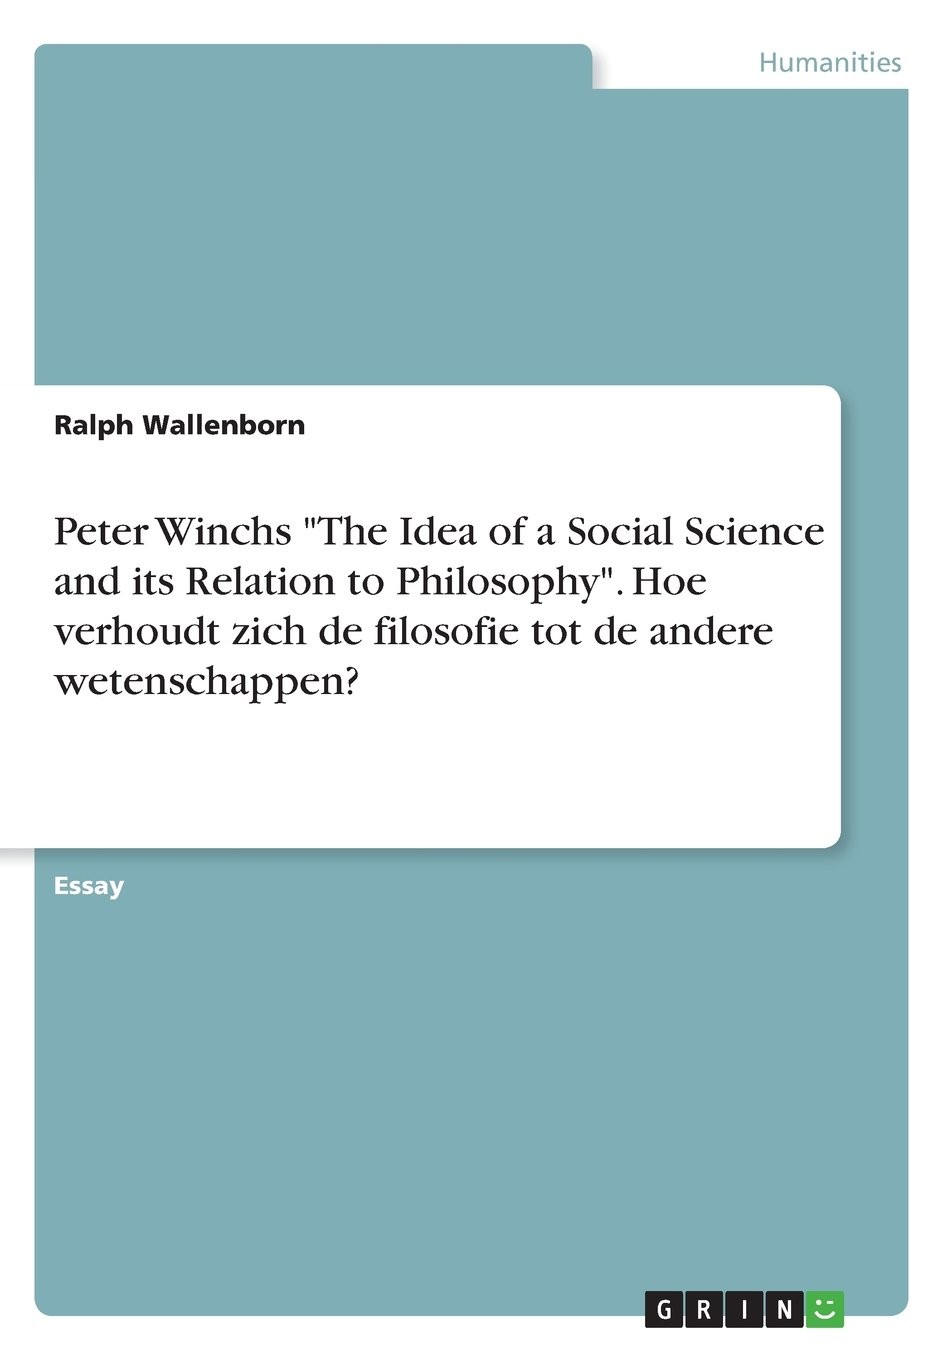 Peter Winchs "The Idea of a Social Science and its Relation to Philosophy". Hoe verhoudt zich de filosofie tot de andere wetenschappen?